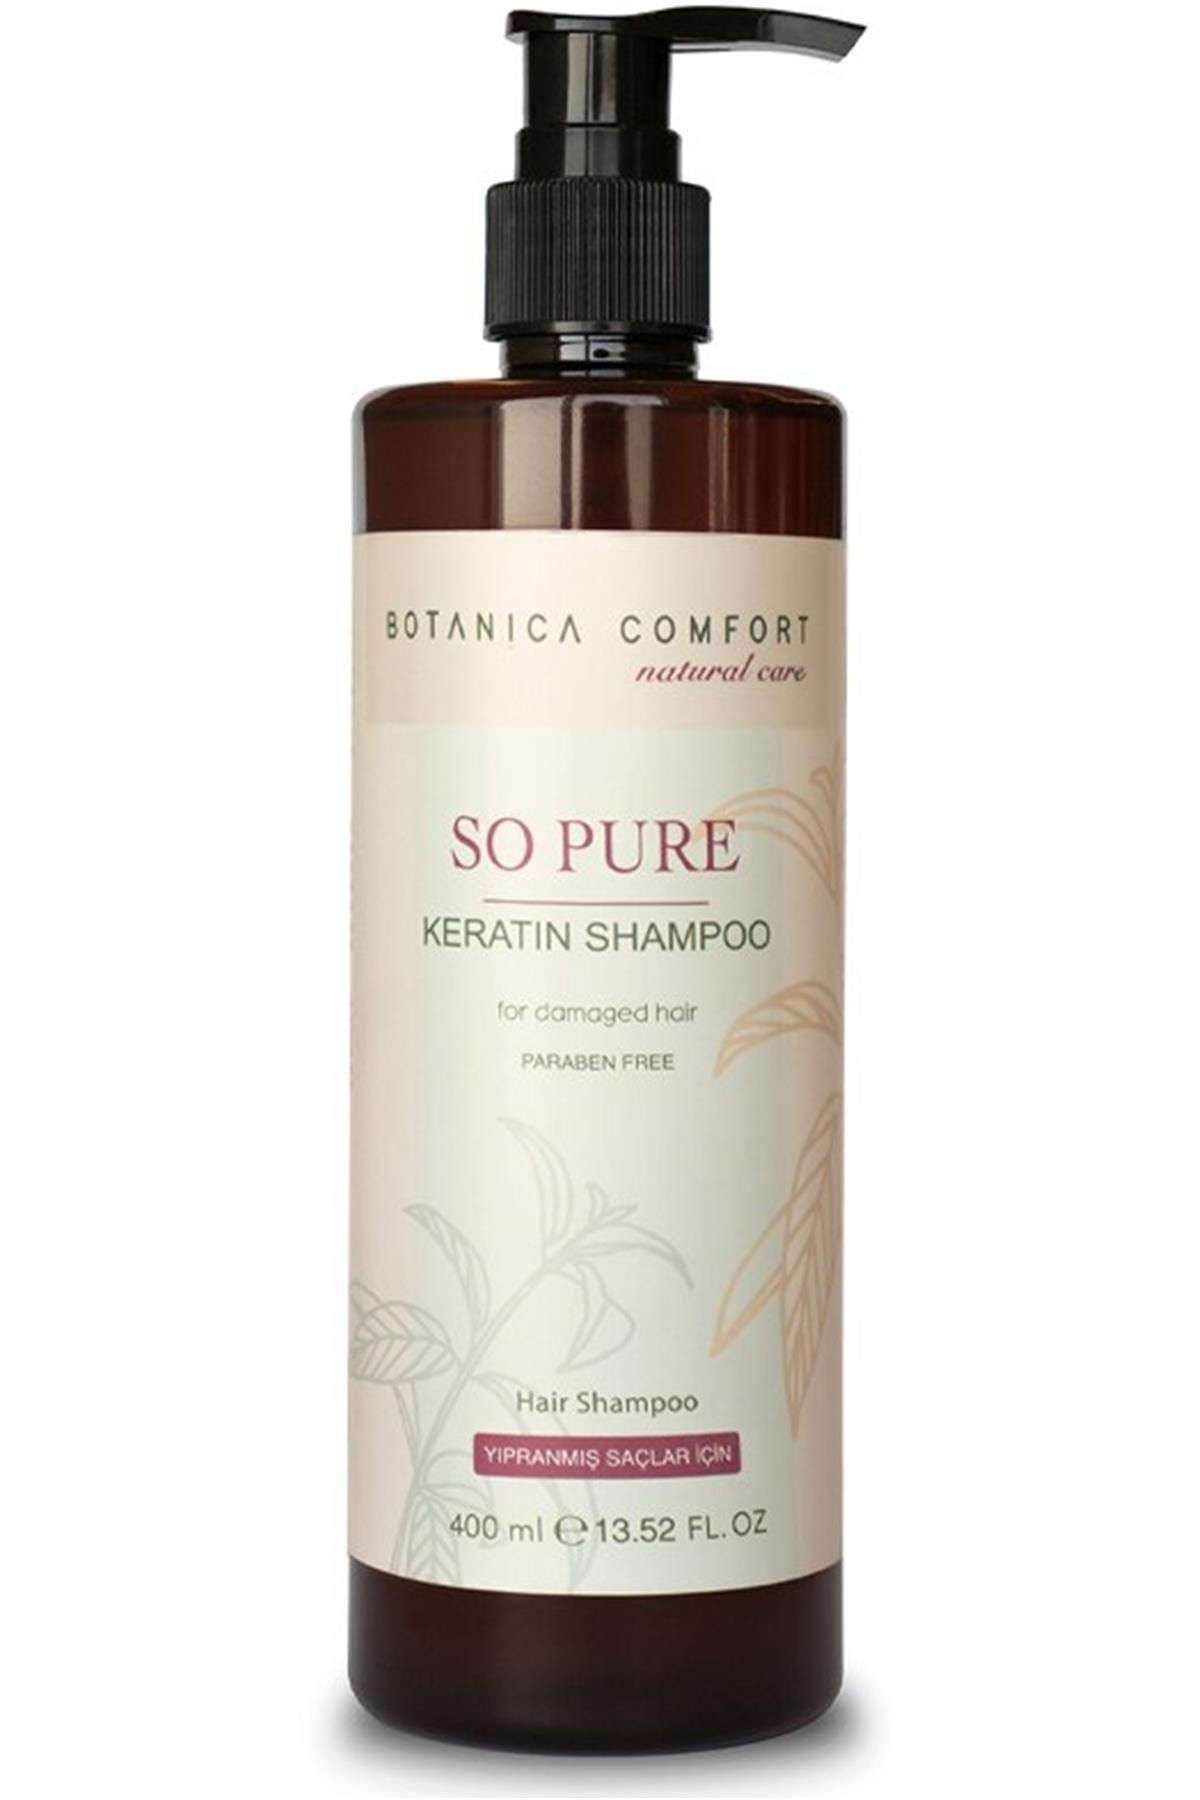 botanica Comfort Yoğun Bakım Keratin Şampuanı 400 ml